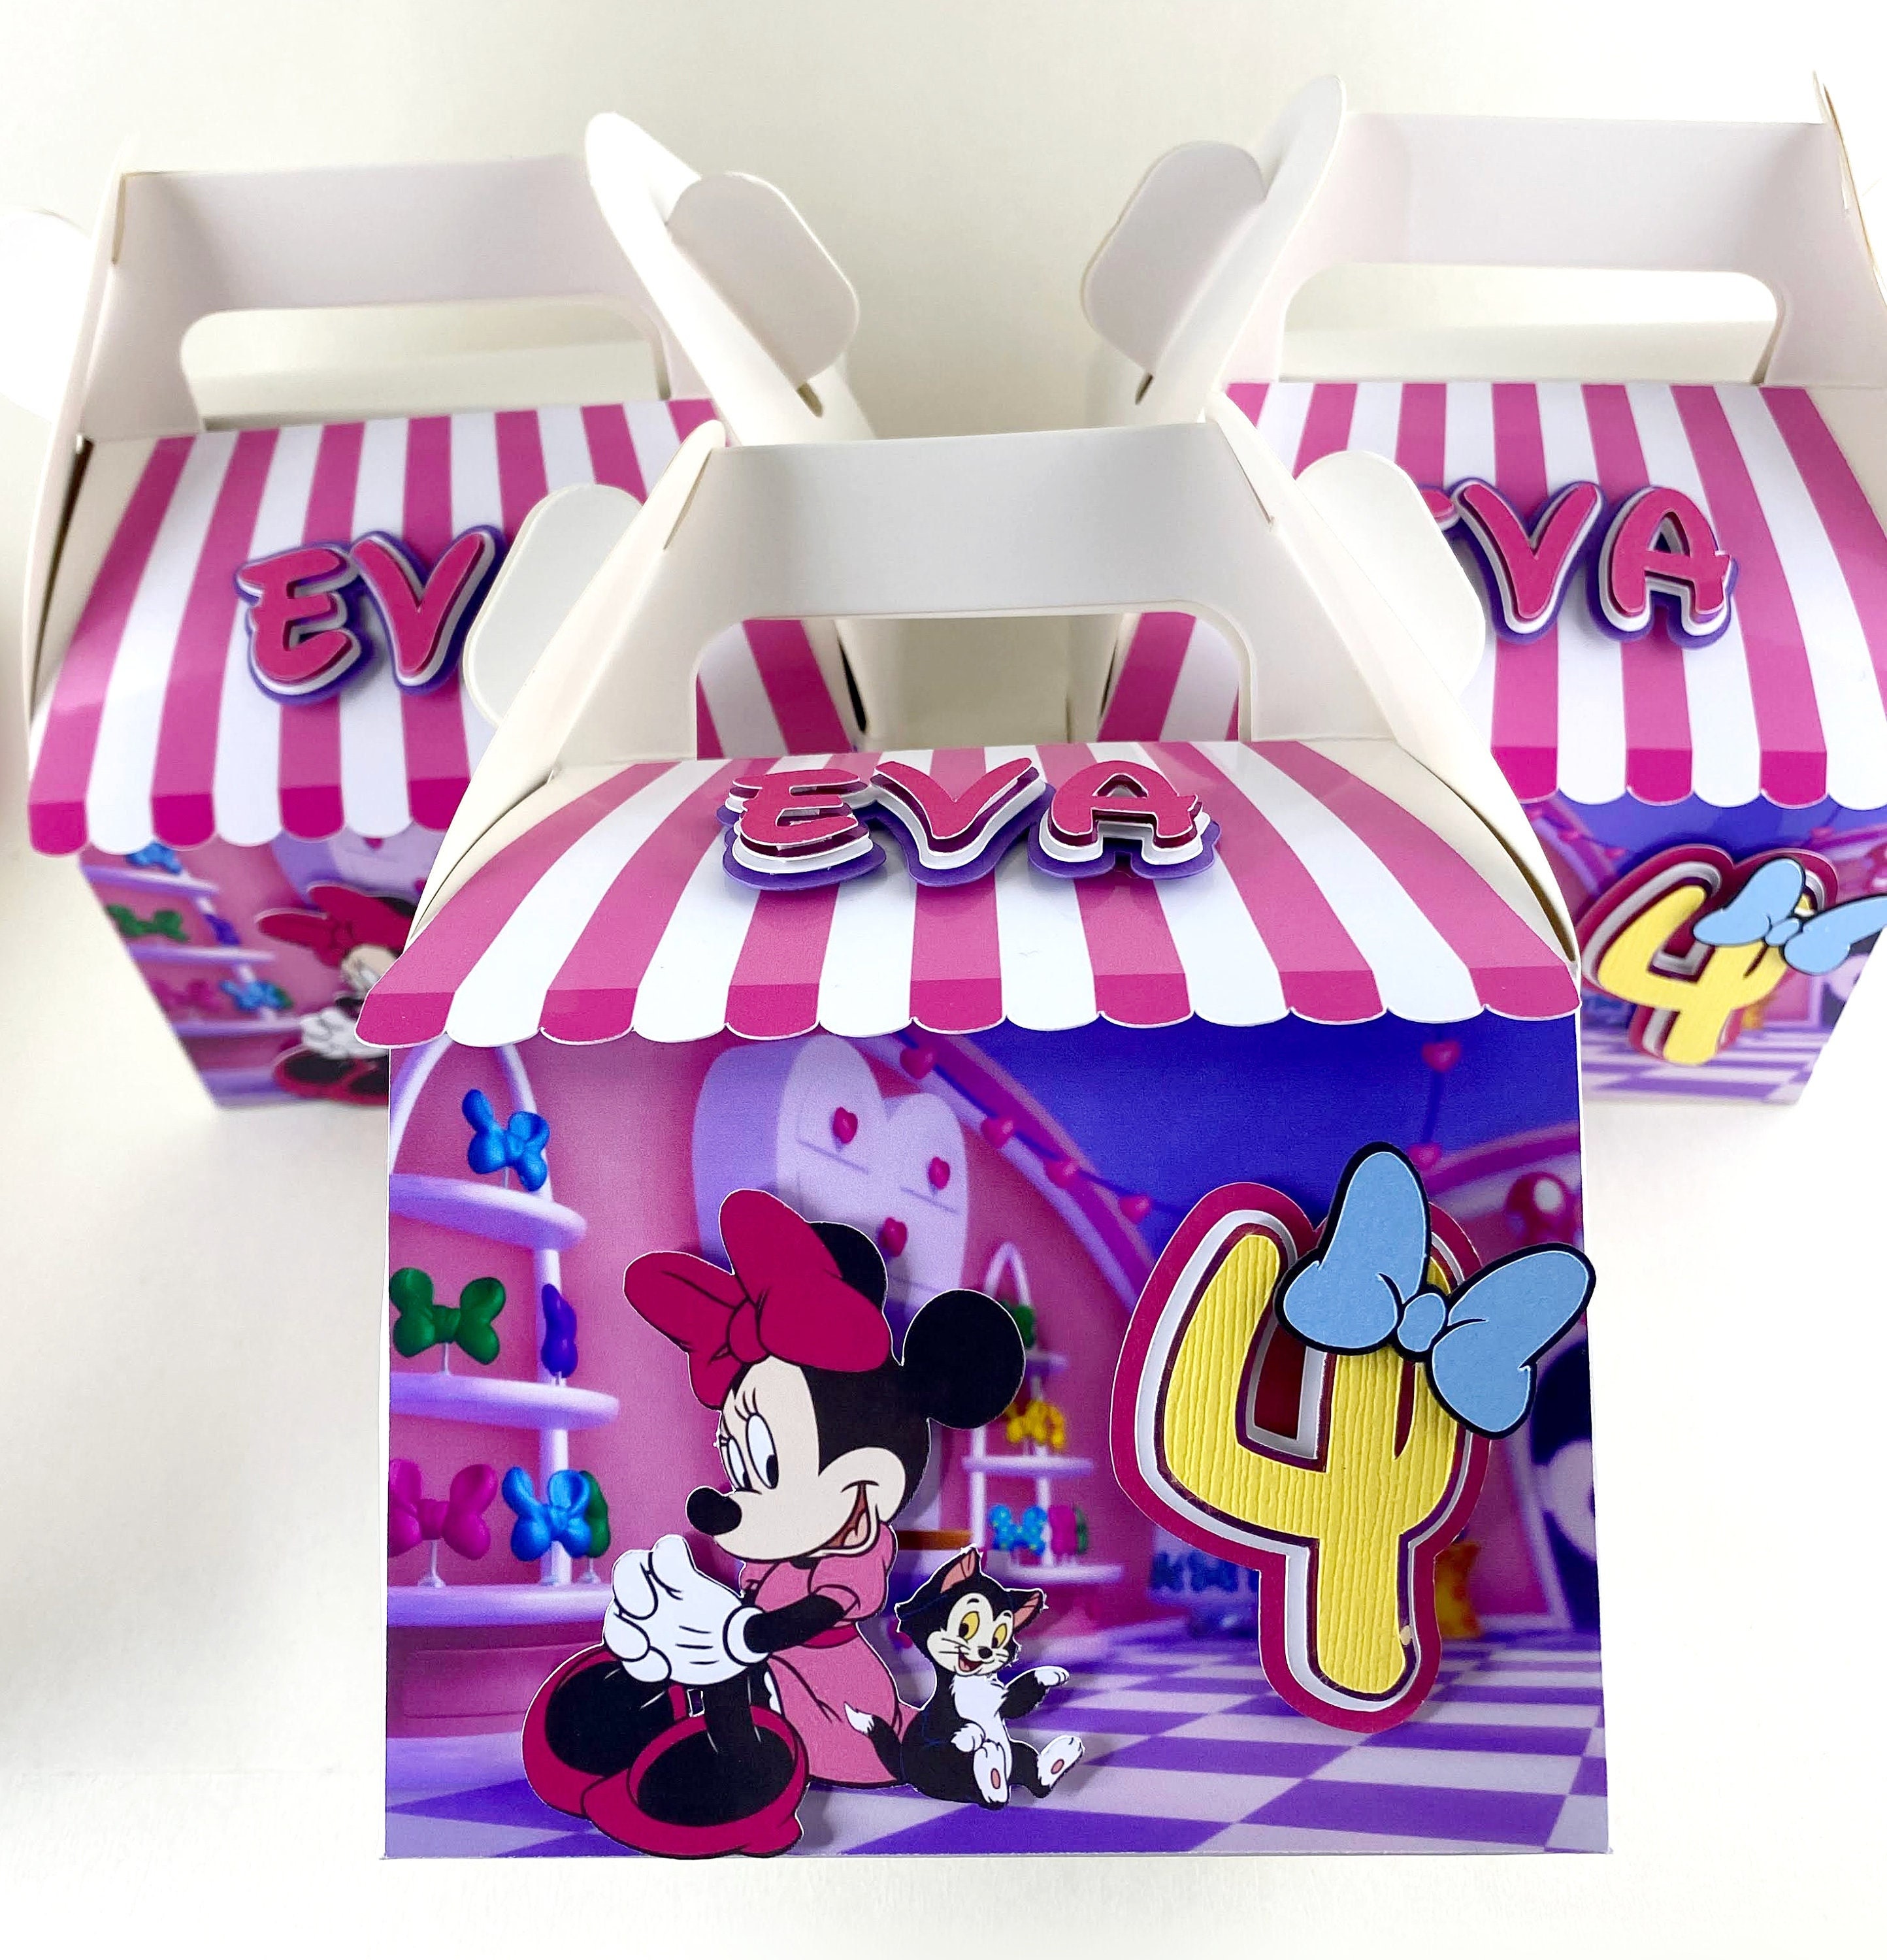 Livraison gratuite 20 X Minnie / Mickey bonbonnière enfants cadeau